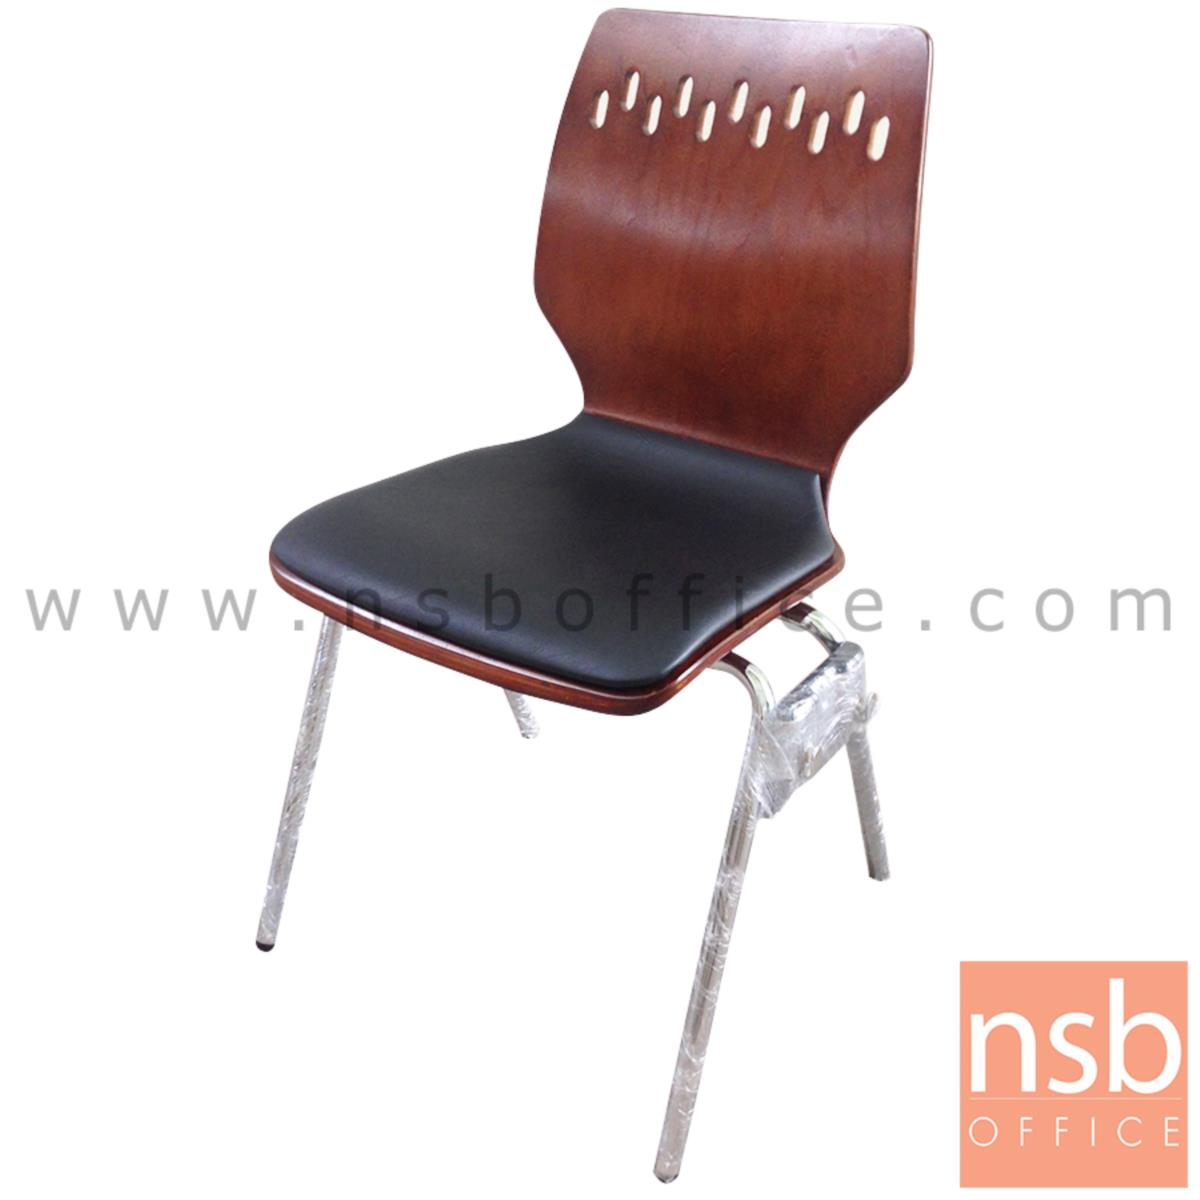 B20A064:เก้าอี้อเนกประสงค์ไม้วีเนียร์ดัด รุ่น Sinister (ซินนิสเตอร์)  ขาเหล็กชุบโครเมี่ยม